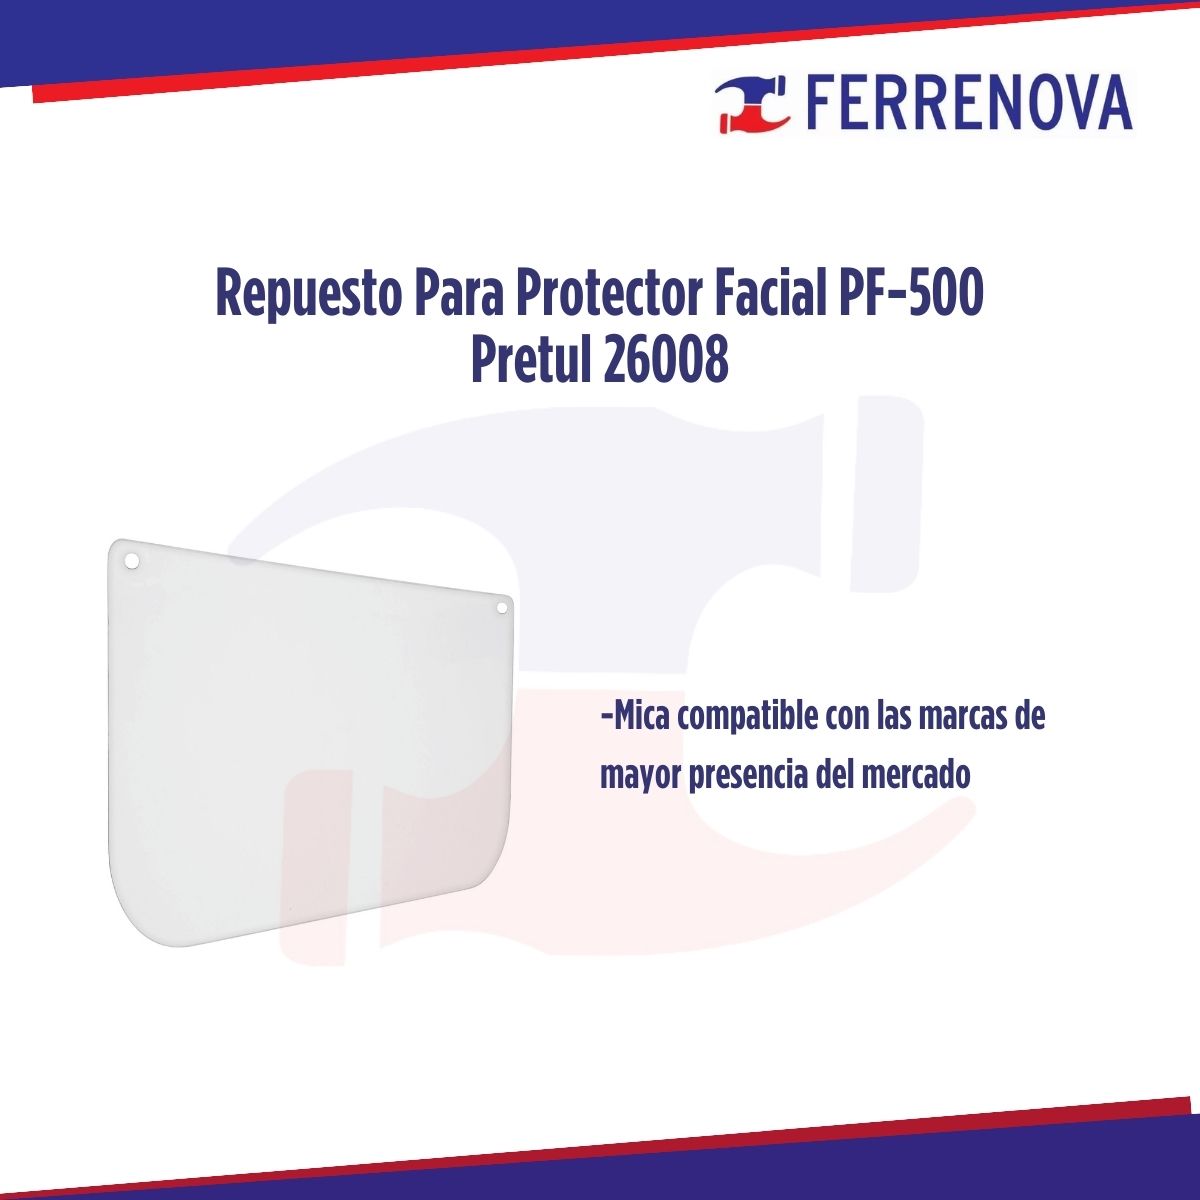 Repuesto Para Protector Facial PF-500P Pretul 26008